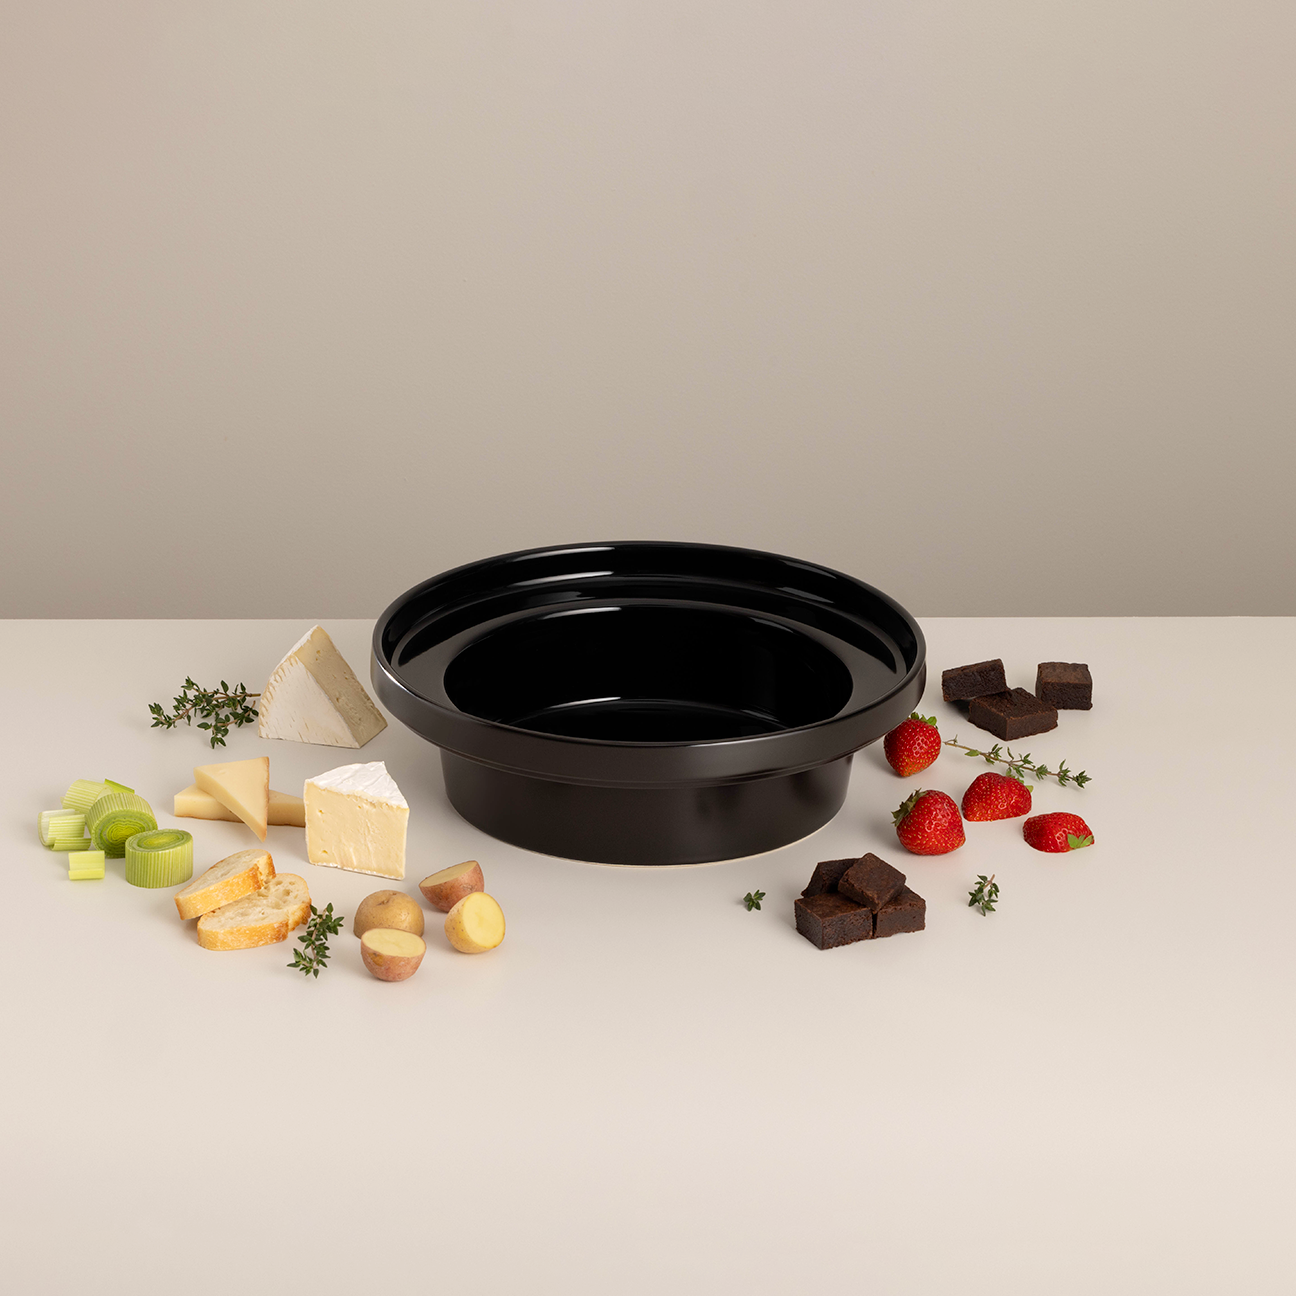 Evolution Ceramic Bowl for Double-boil